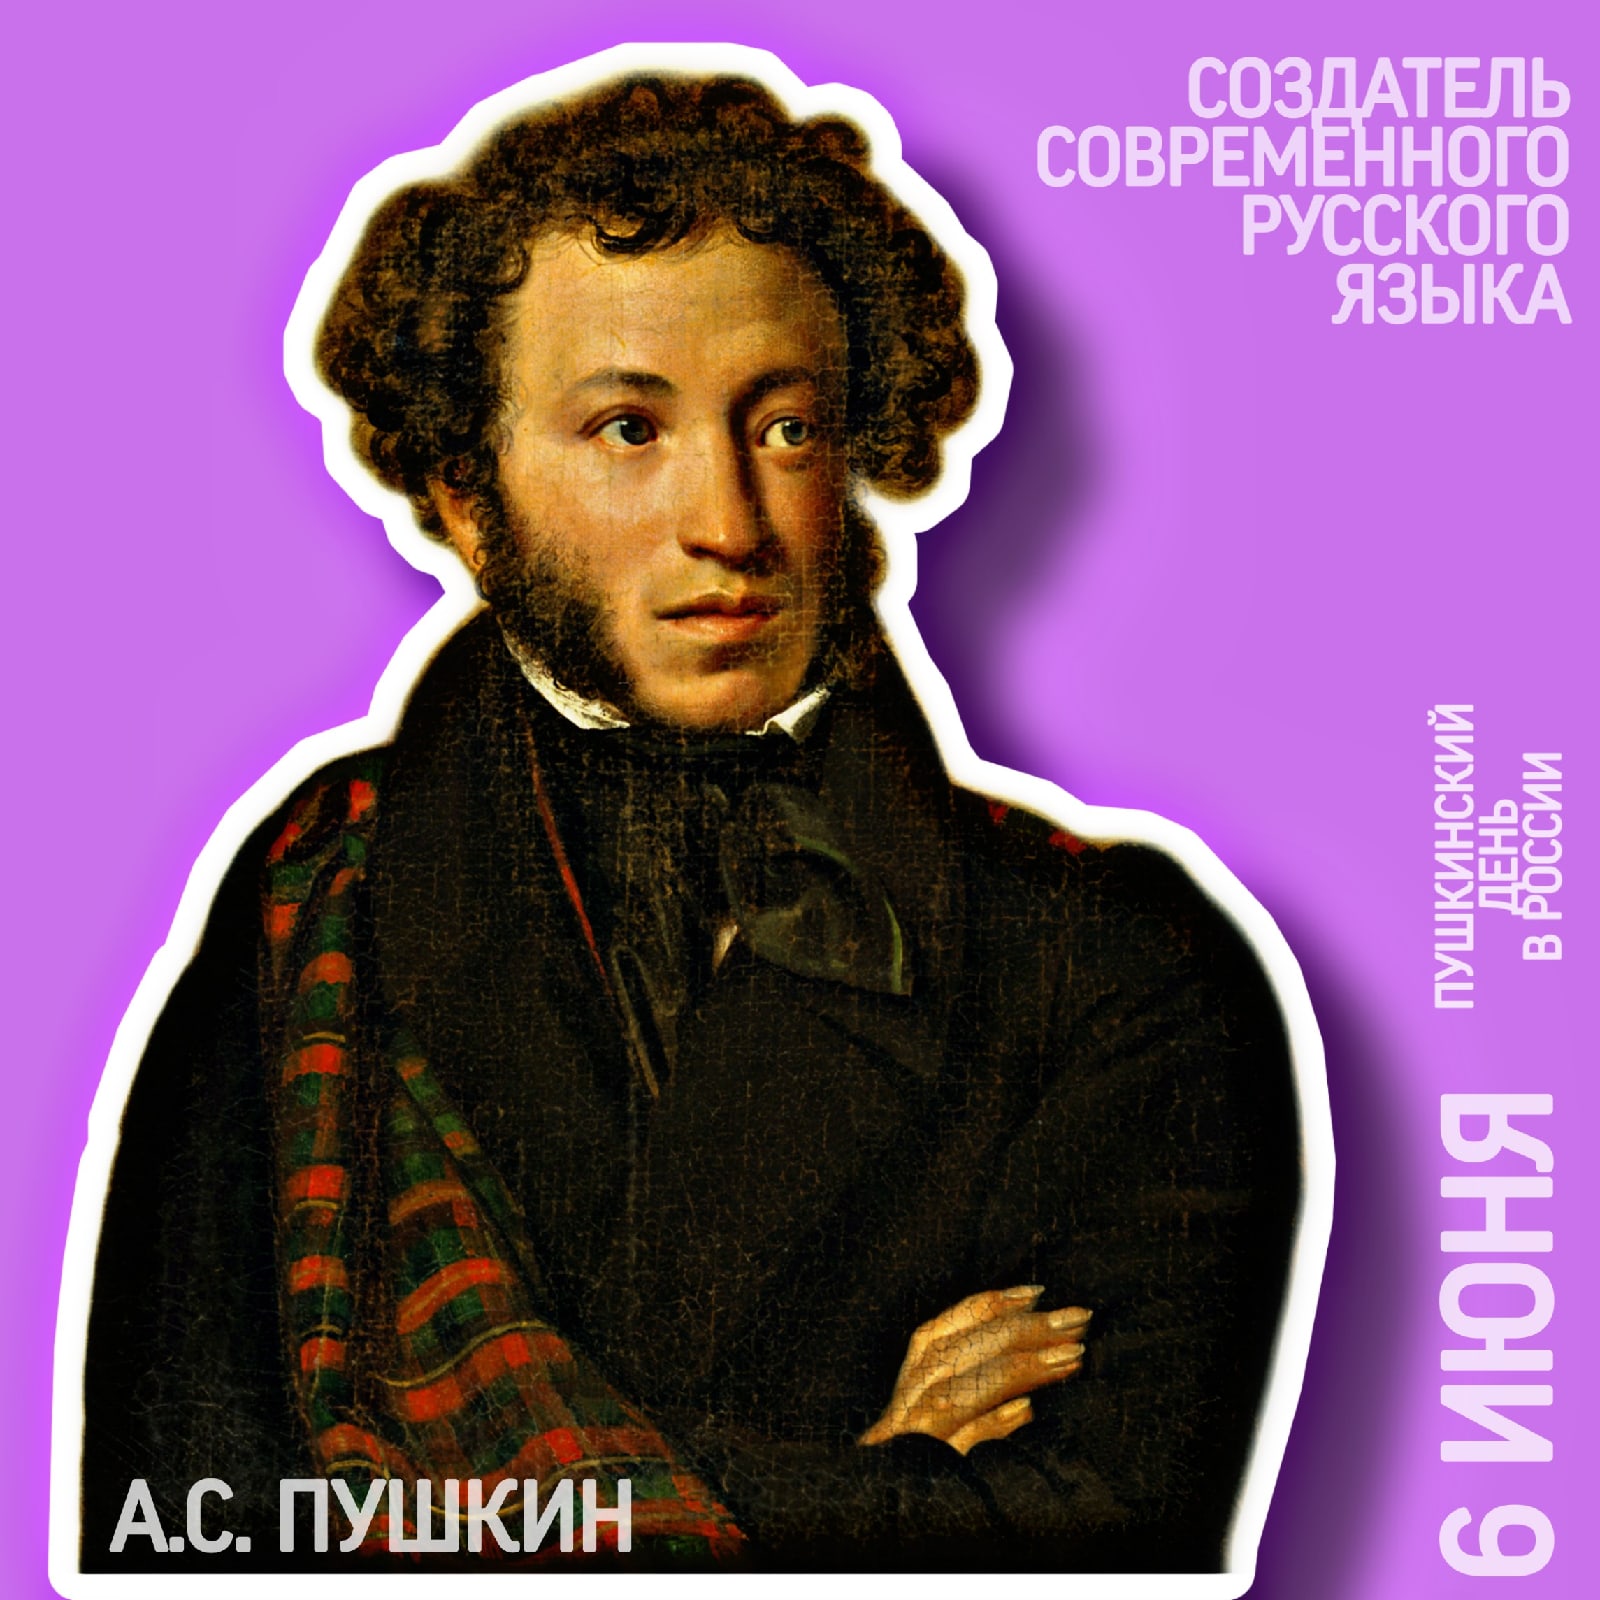 Пушкинский день России: в этом году будет отмечаться 223 день рождения Александра Сергеевича Пушкина